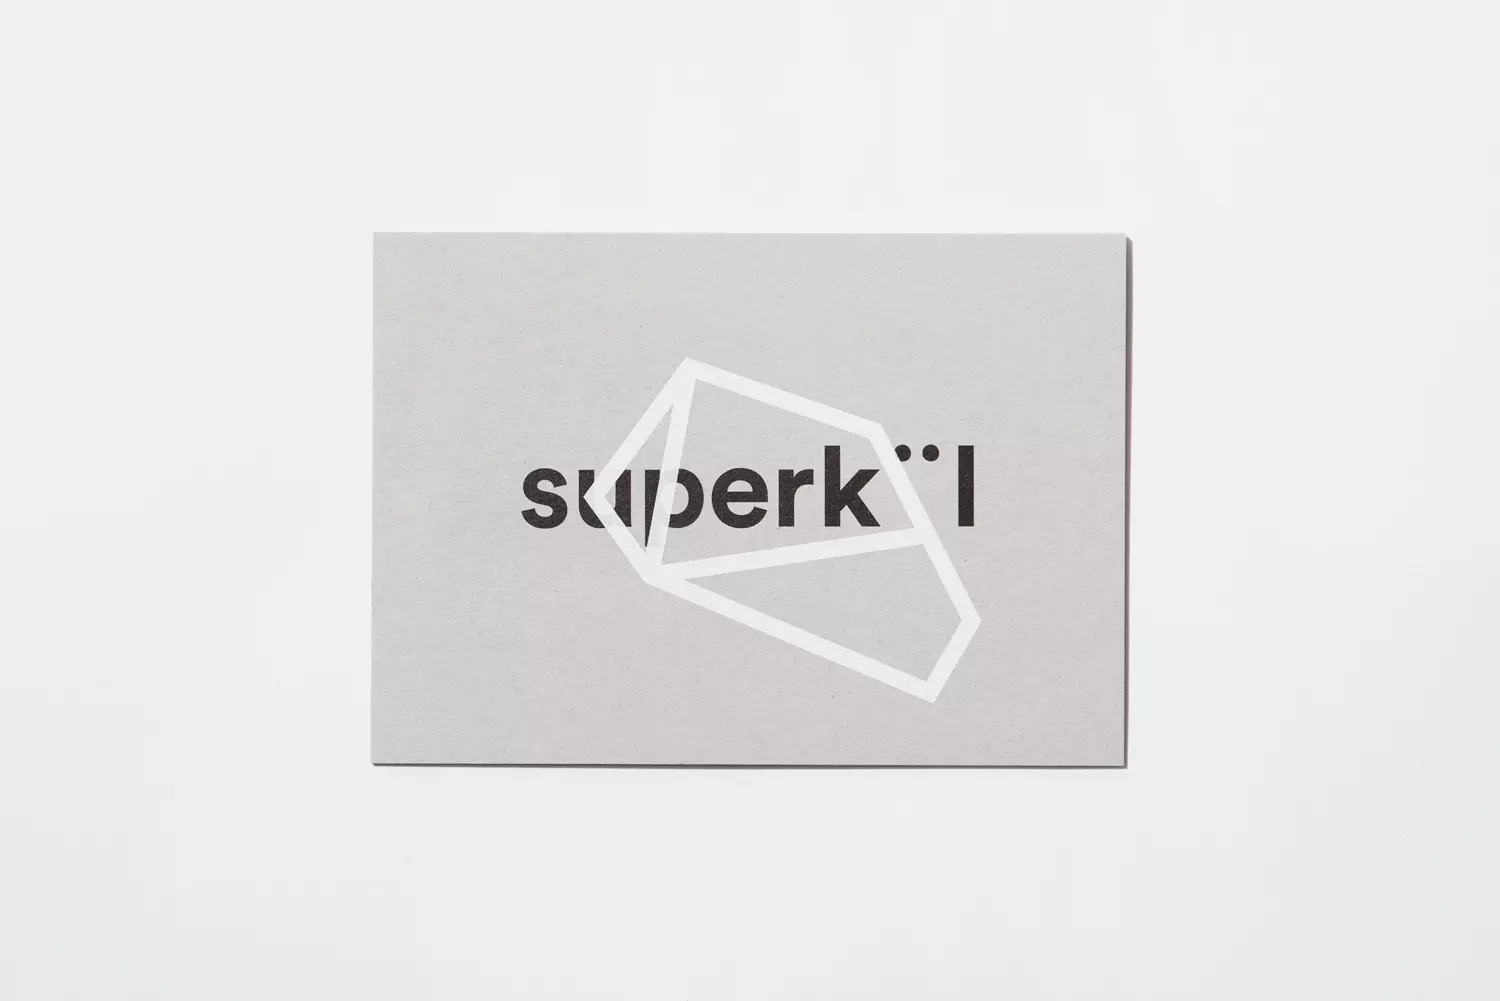 加拿大建筑公司Superkl的多伦多平面设计工作室图标